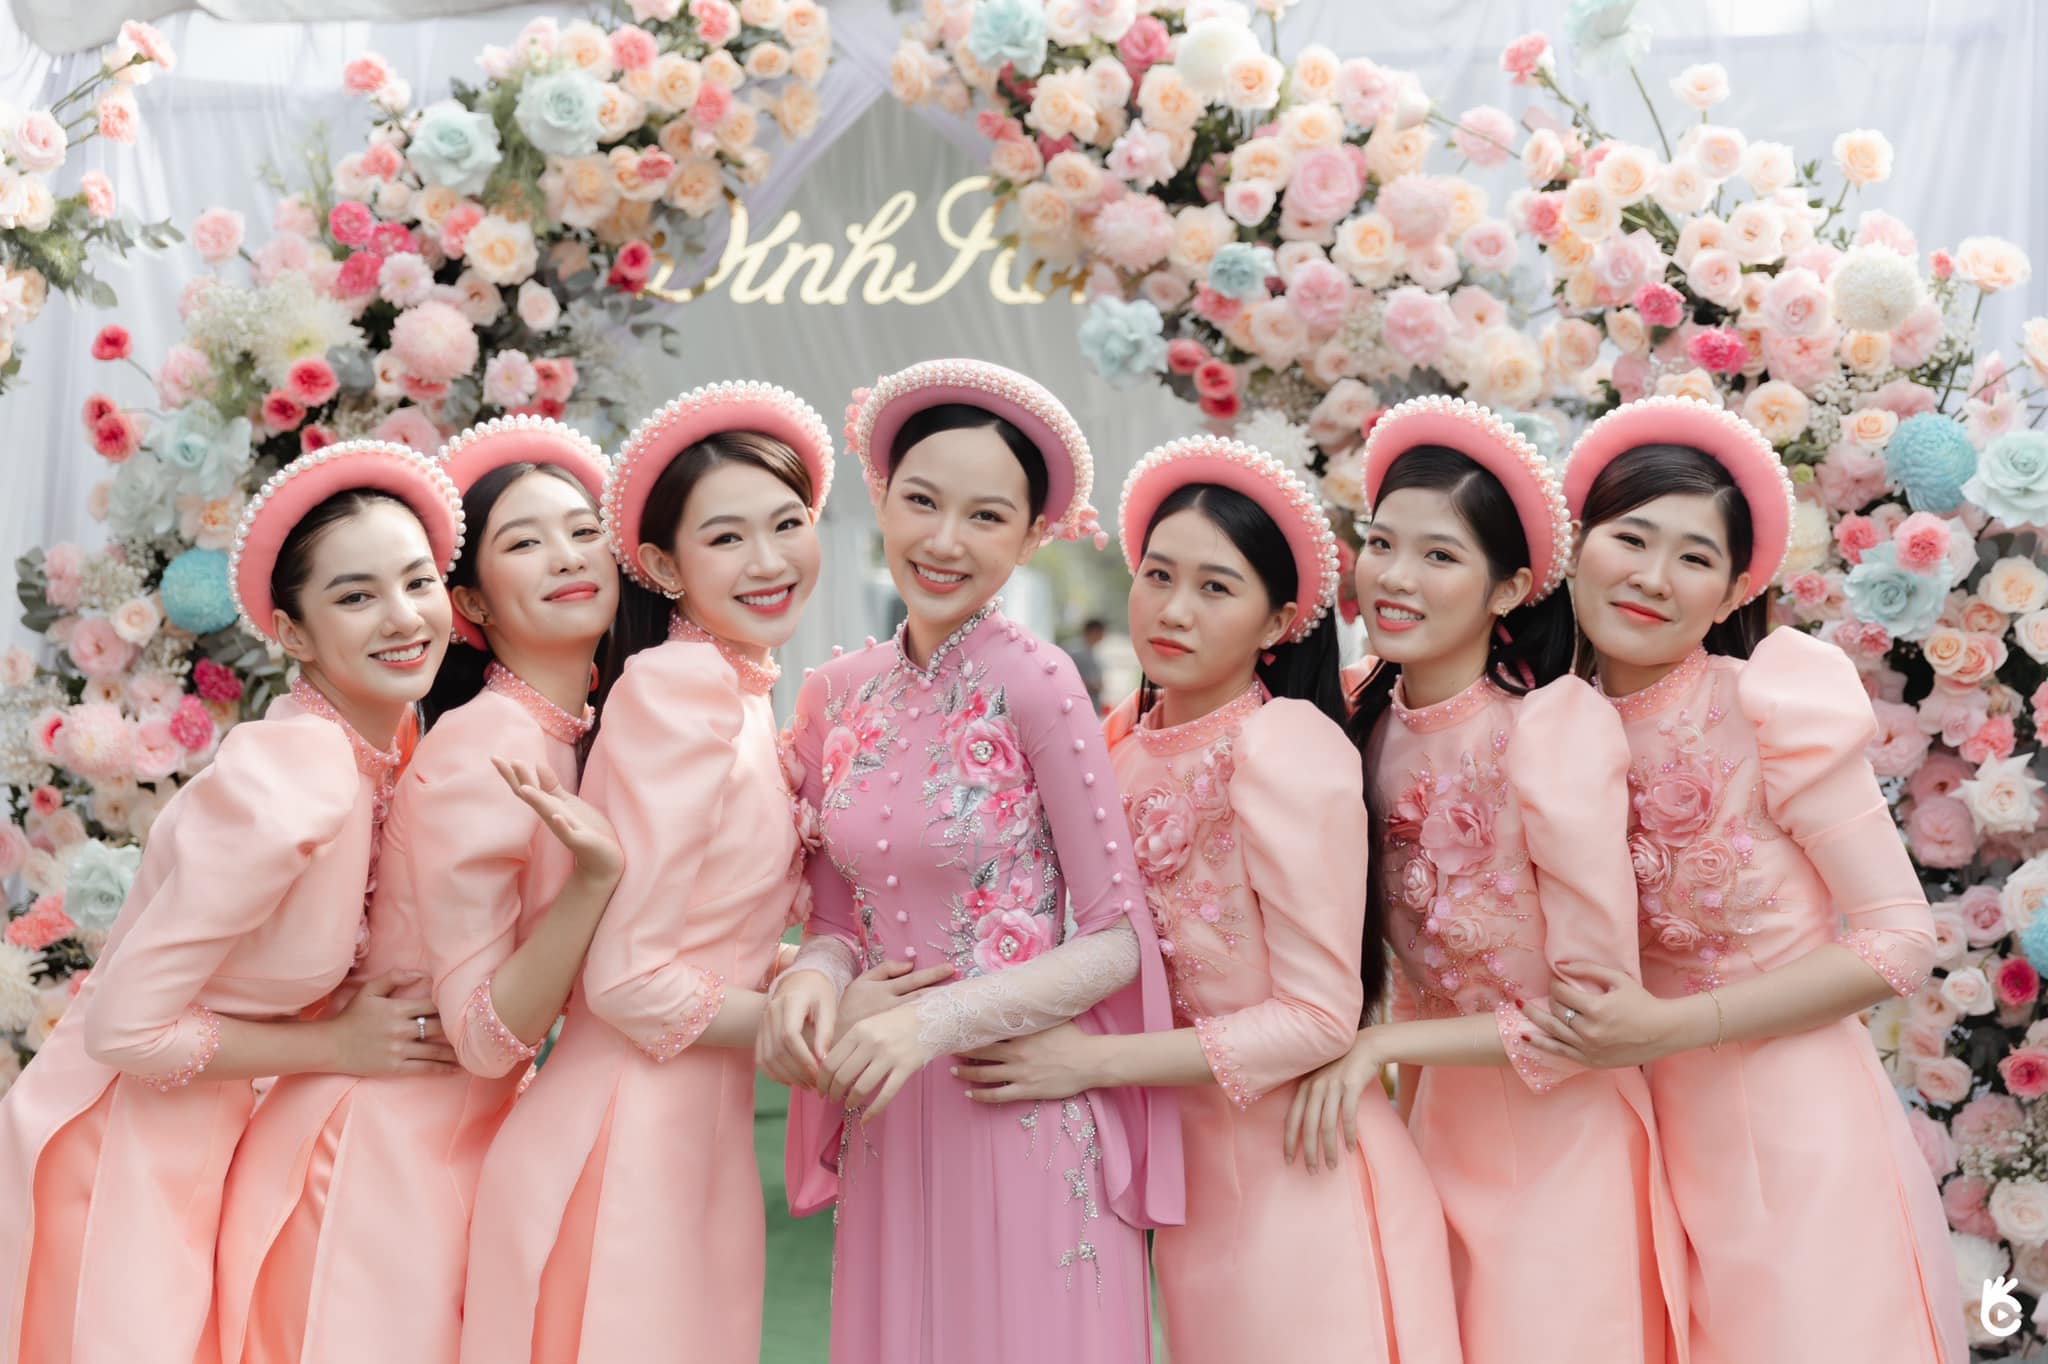 Top 5 \'Hoa hậu Việt Nam\' Phương Quỳnh kết hôn ở tuổi 22